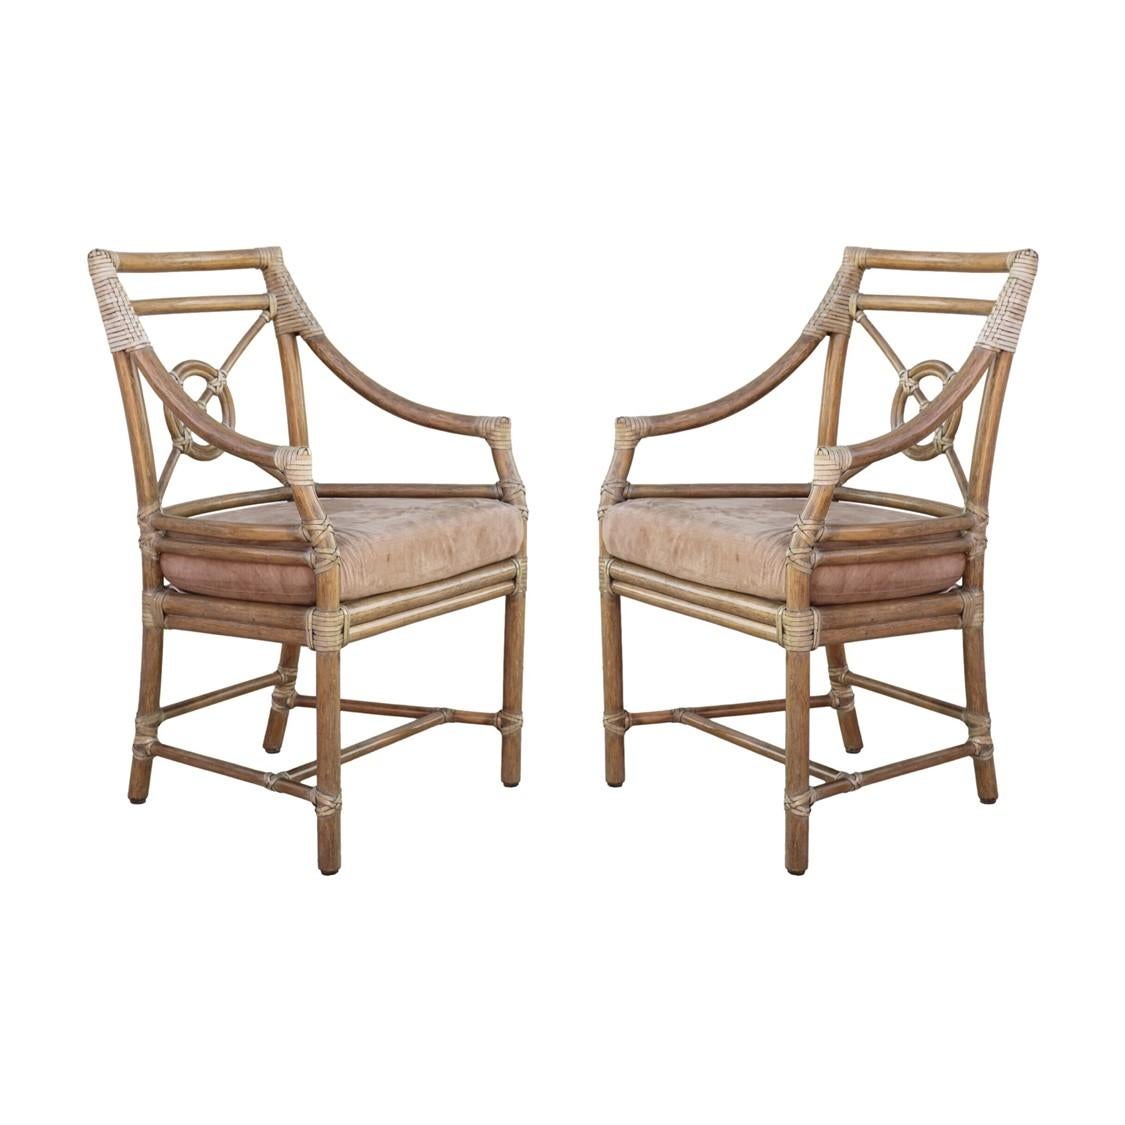 Ein Paar Rattansessel oder Esszimmerstühle, entworfen von der bahnbrechenden Innovatorin Elinor McGuire im Stil der kalifornischen organischen Moderne. Diese tadellos gefertigten Stühle haben eine offene Rattan-Rückenlehne, die das ikonische